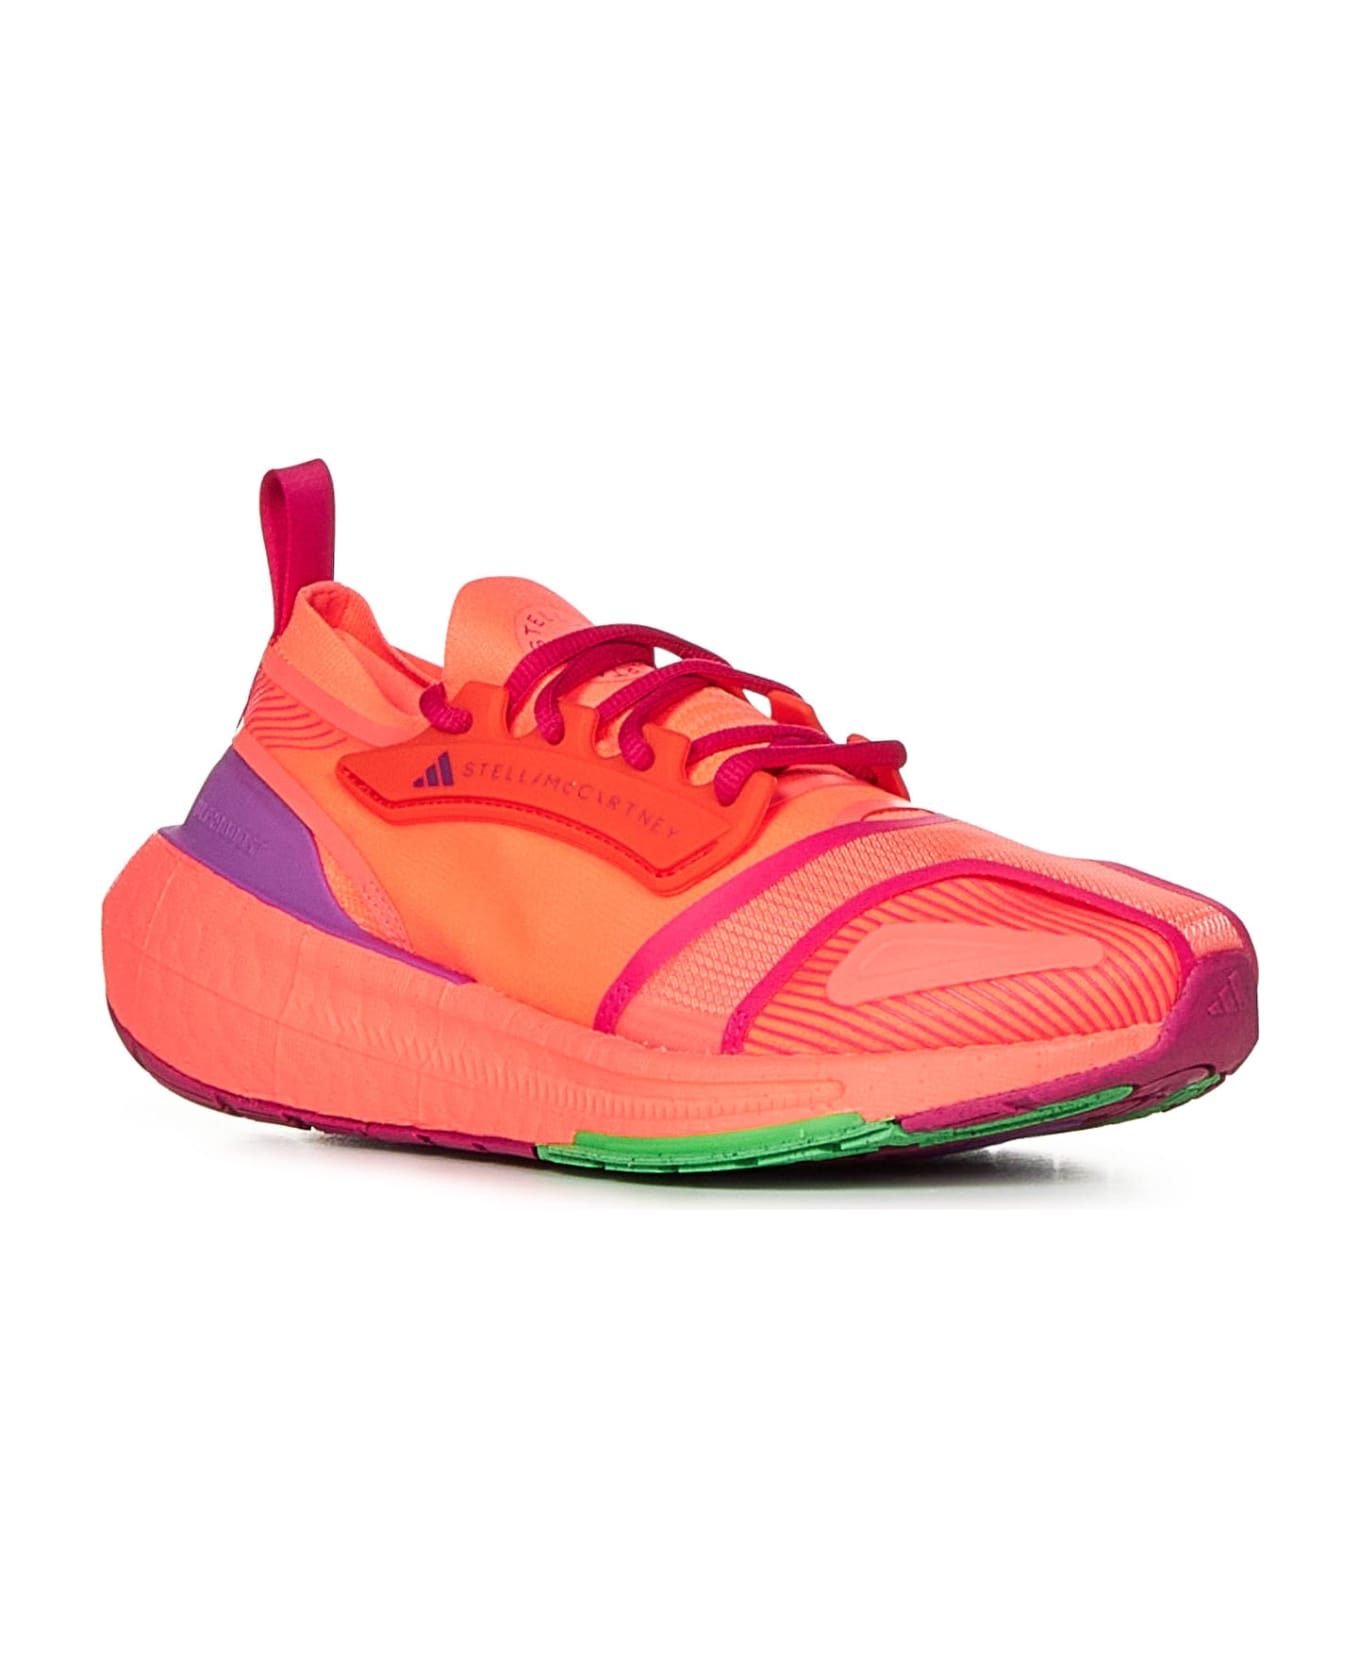 Adidas by Stella McCartney Ultraboost Light Sneakers - Turbo